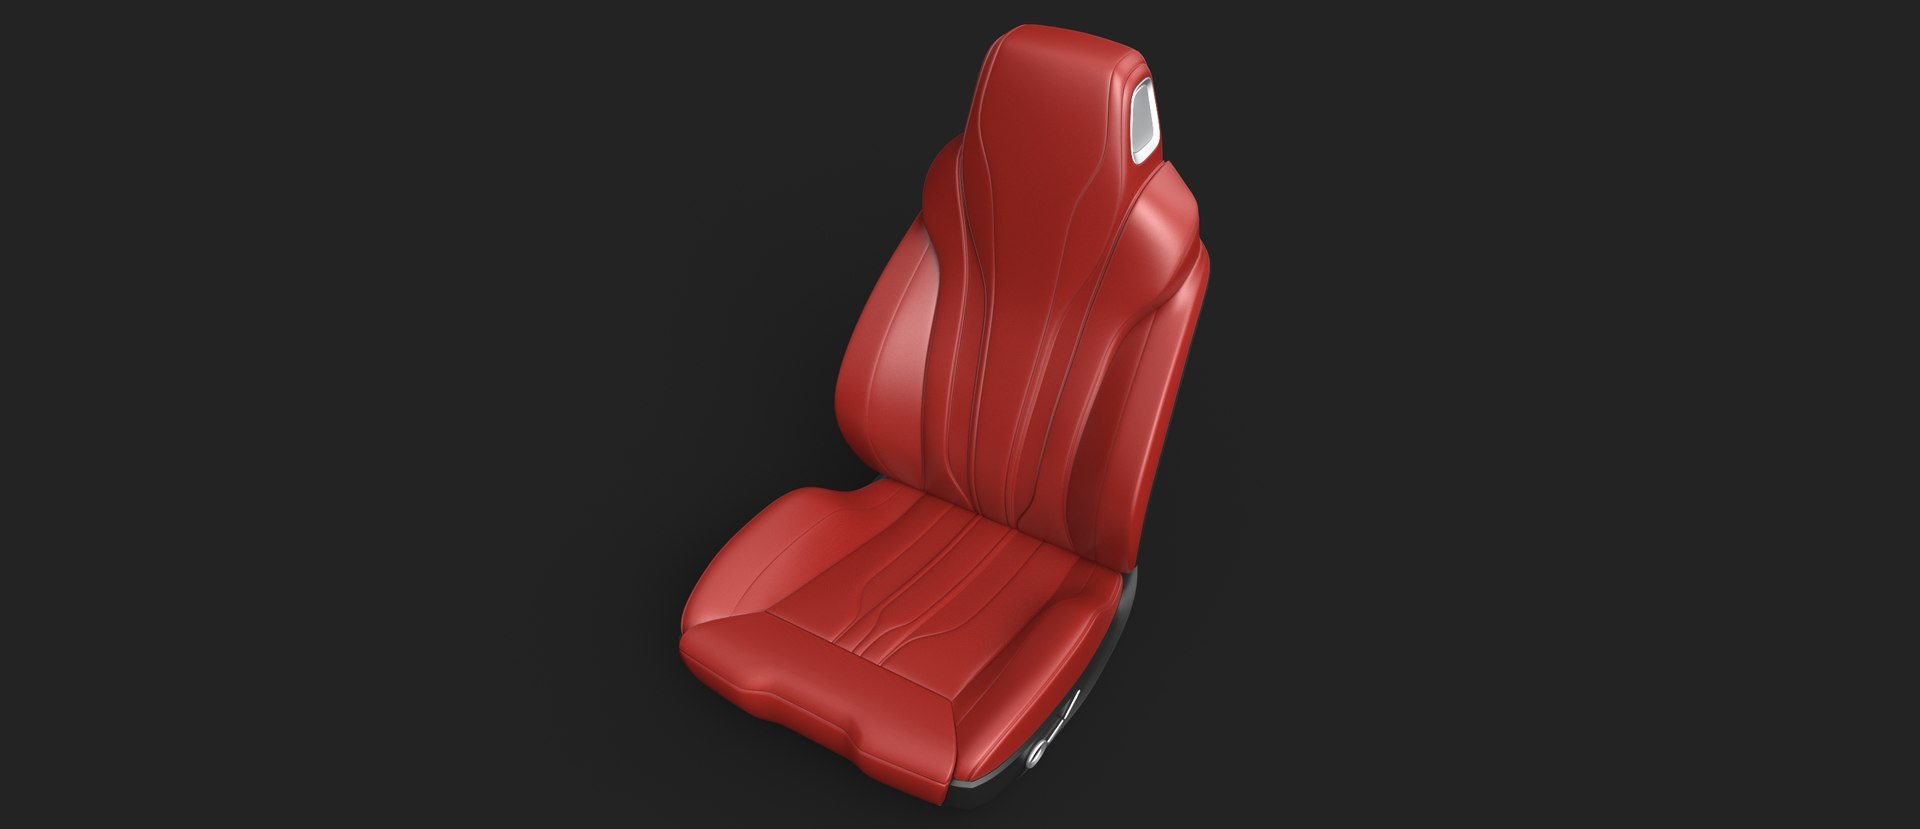 Car Seat 3d Model Turbosquid 1471235